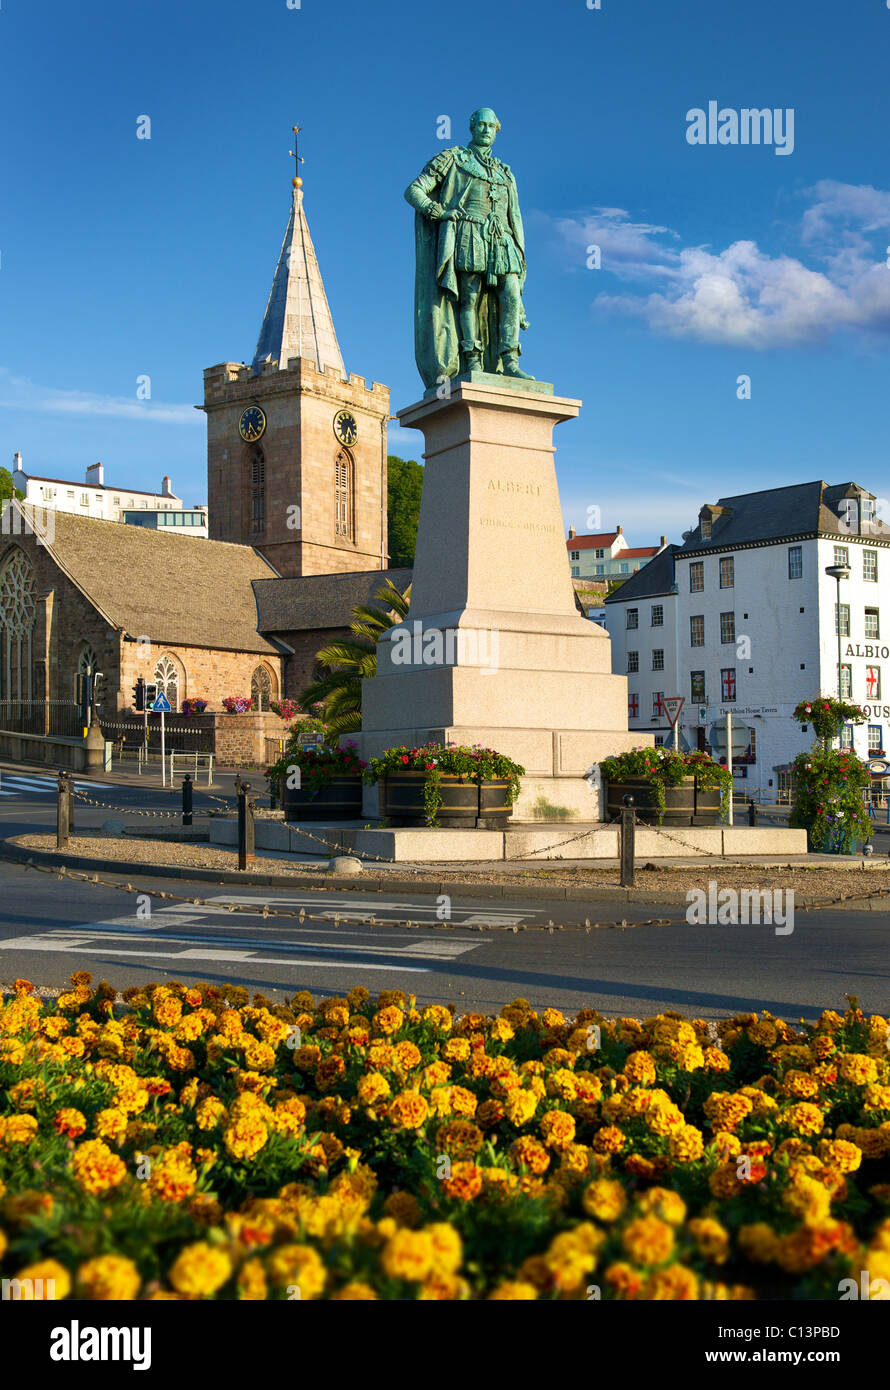 Prince Albert statua,Chiesa della Trinità, St. Peter Port Guernsey,,Guernsey,Isole del Canale. Foto Stock